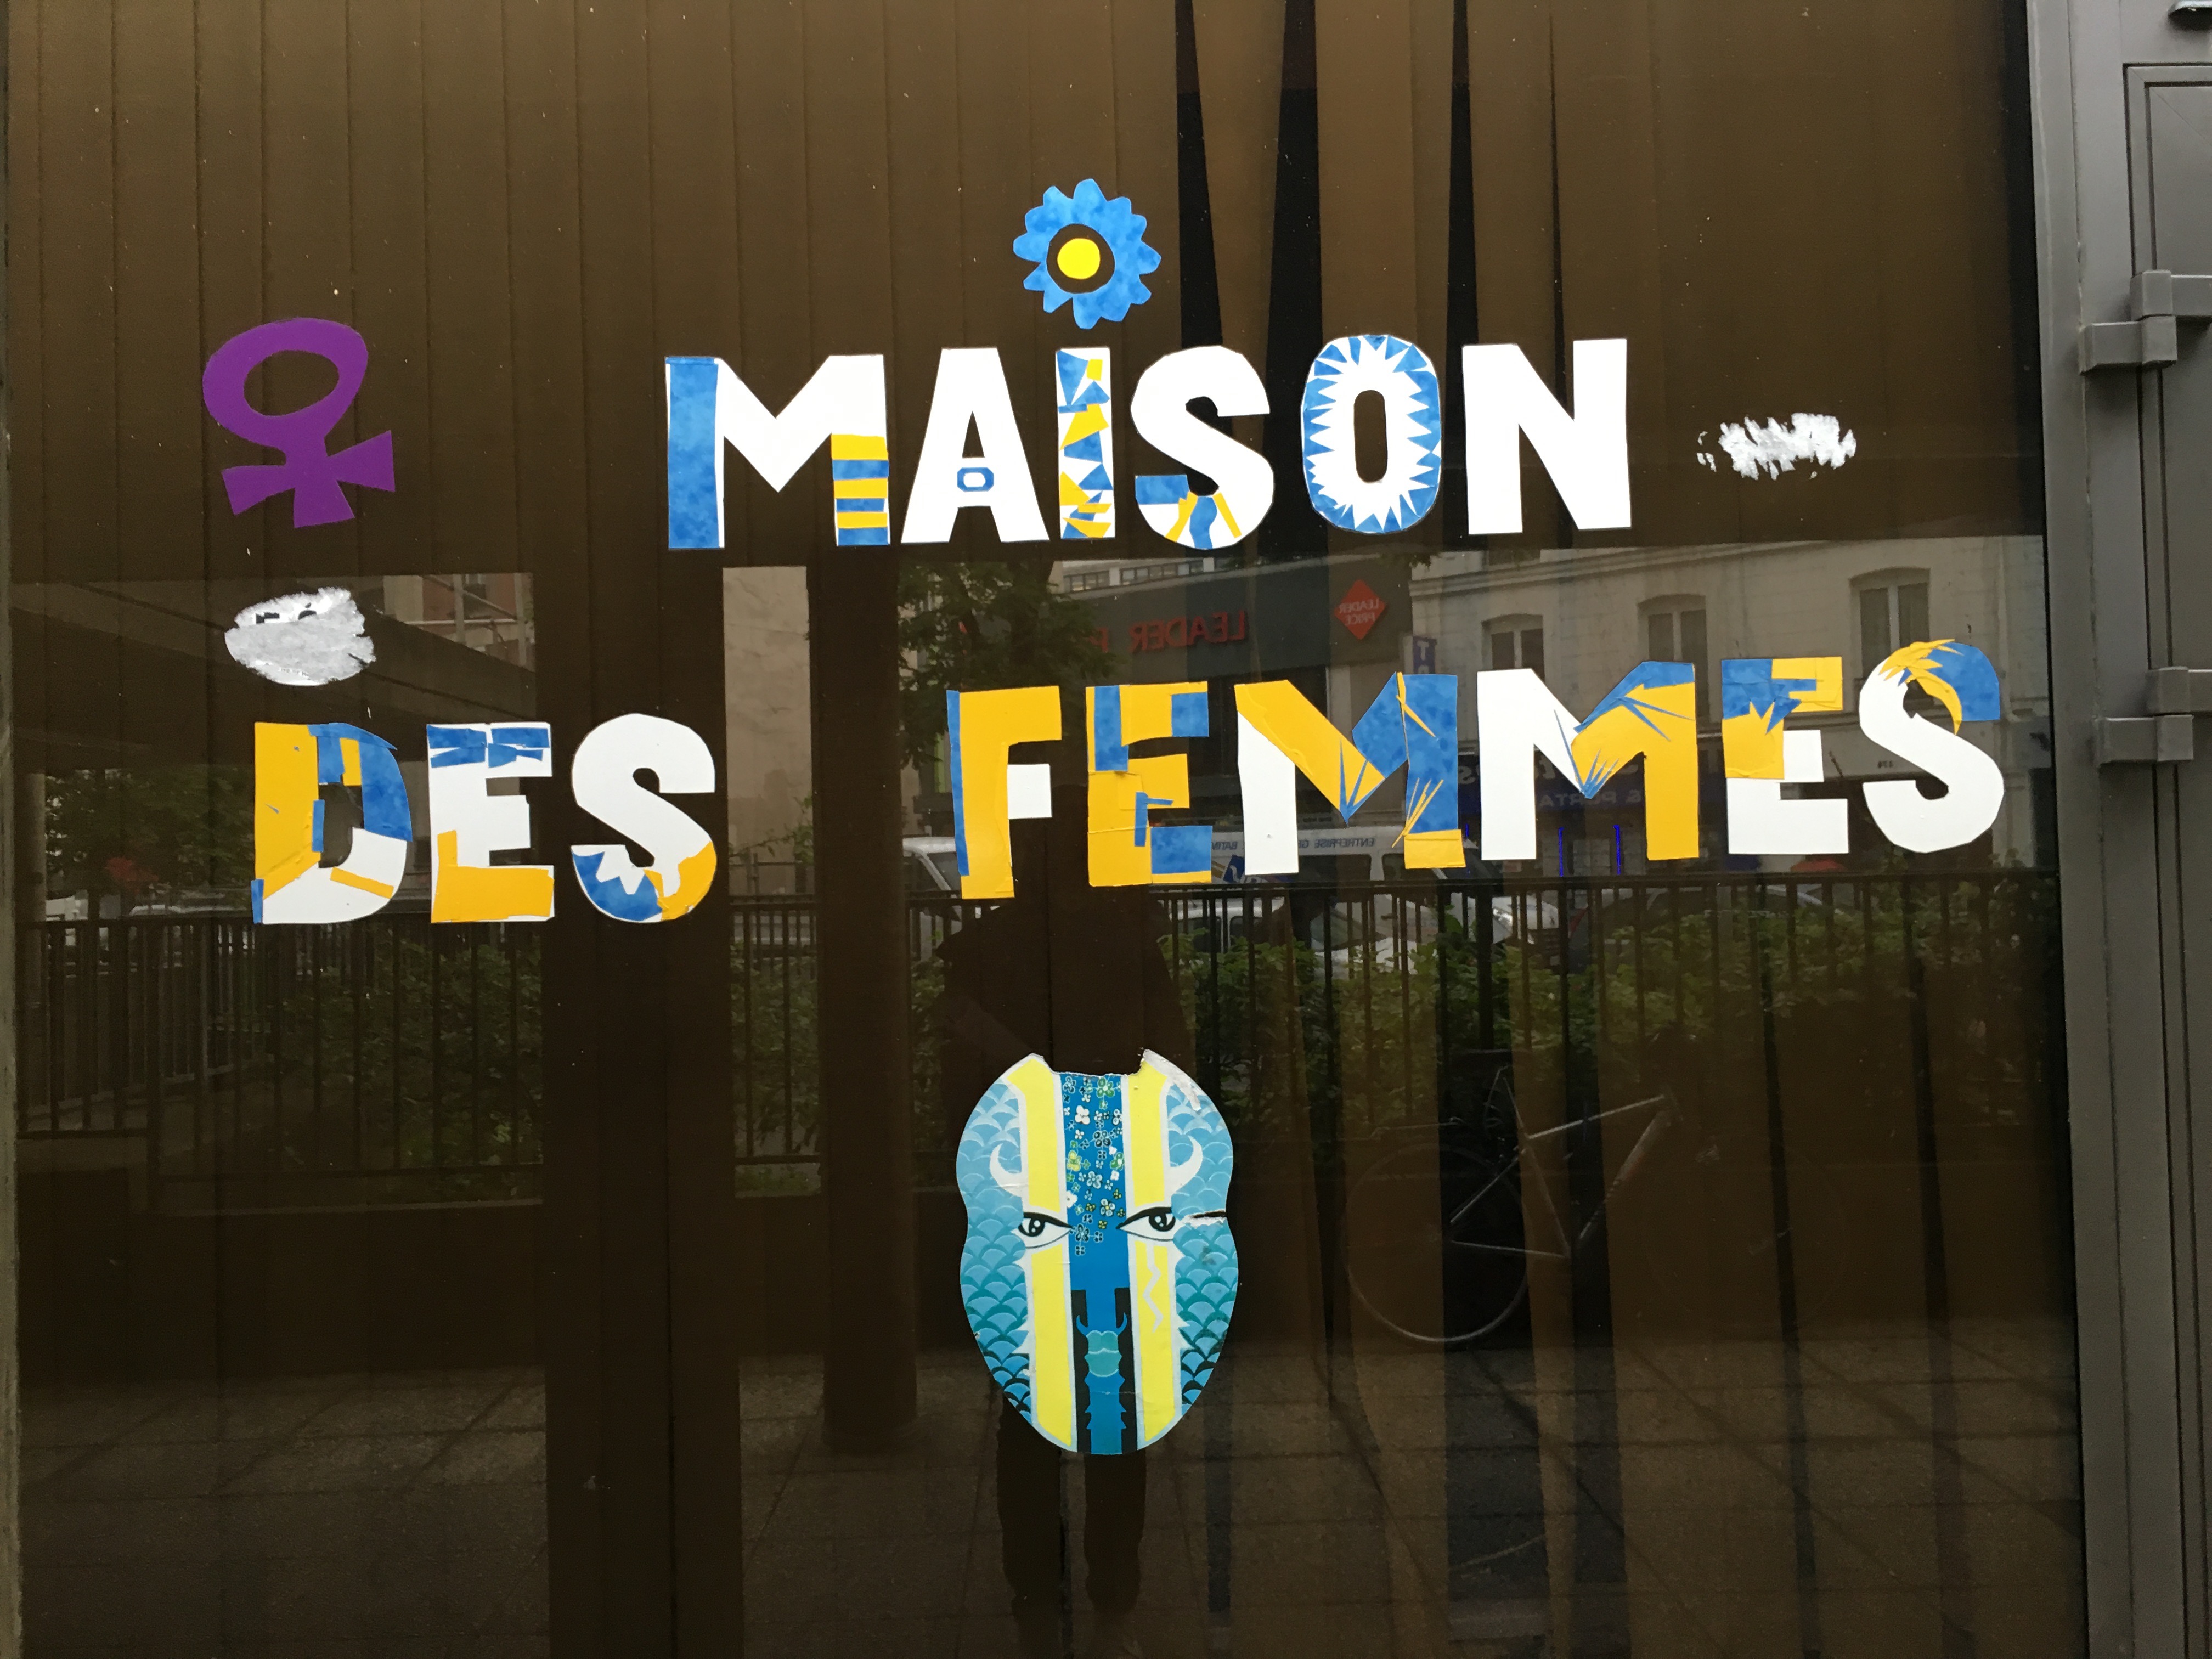 wall that says "Maison des femmes"